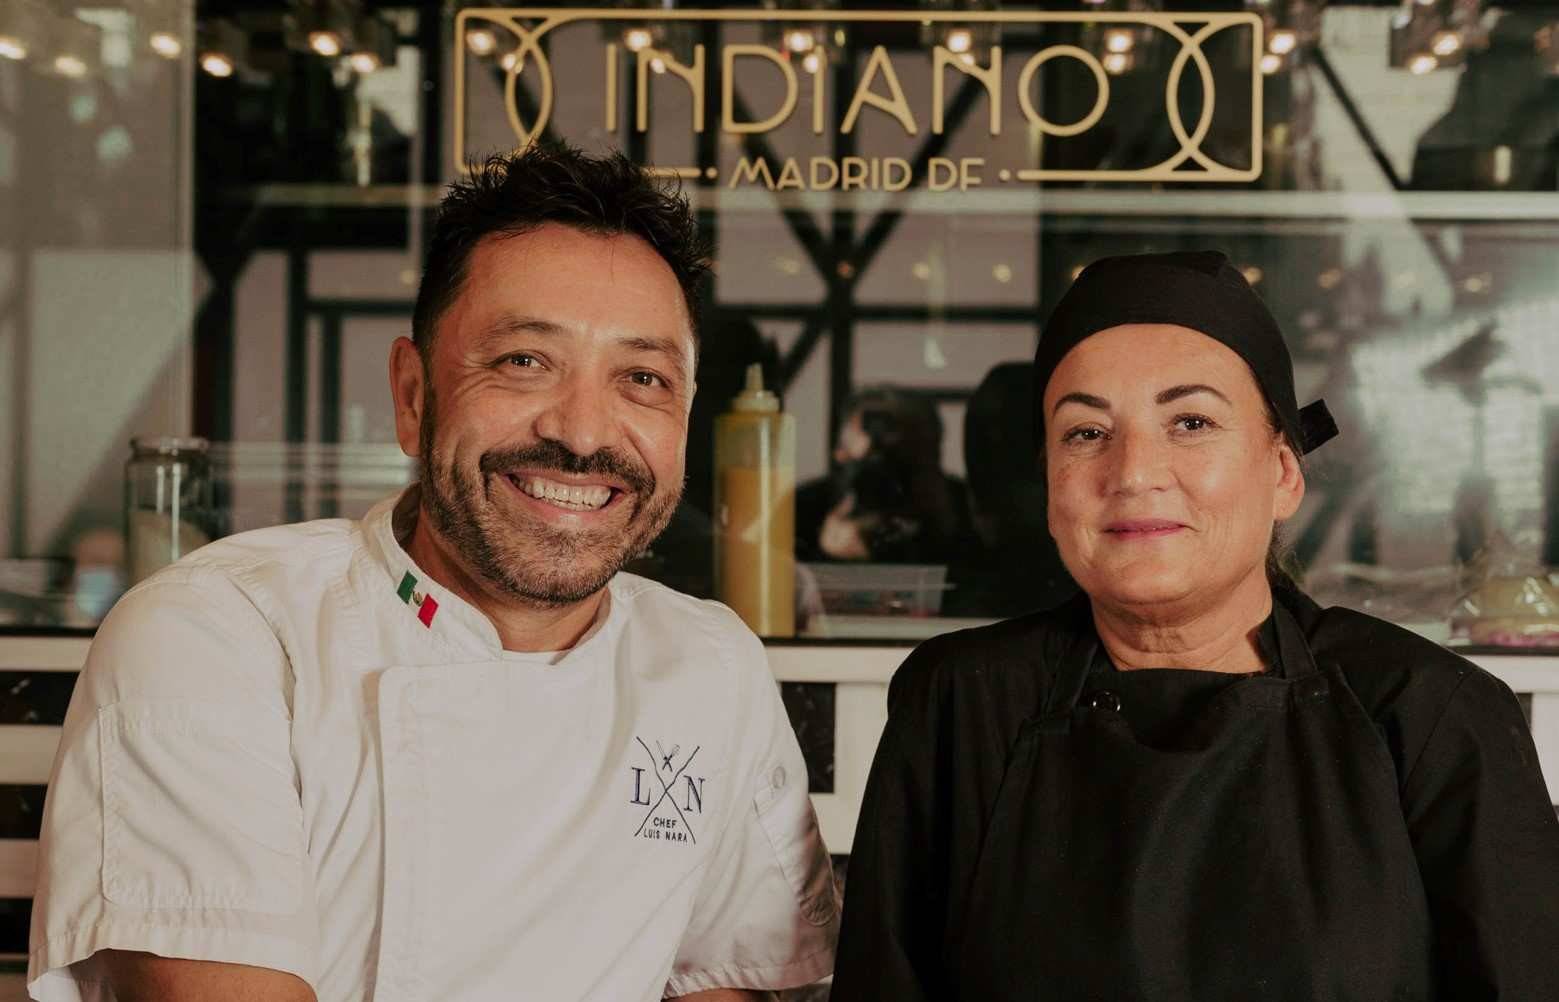 Rita Sánchez y el chef Luis Nara